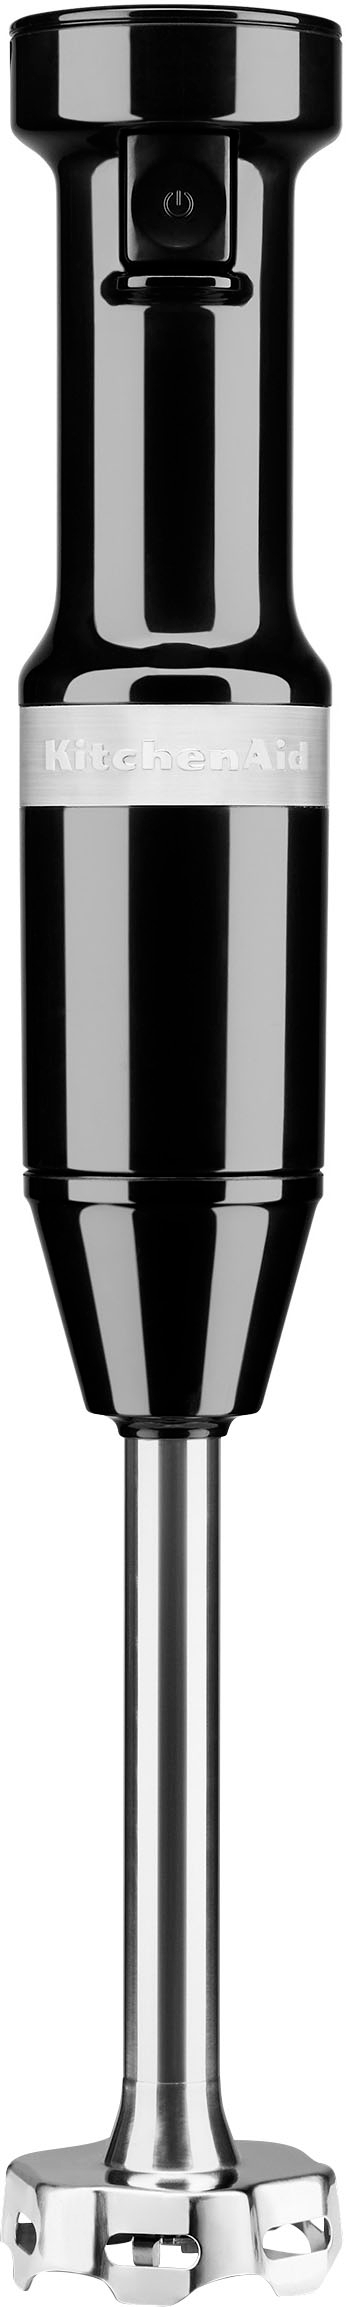 KitchenAid Cordless Variable Speed Hand Blender Black Matte KHBBV53BM -  Best Buy